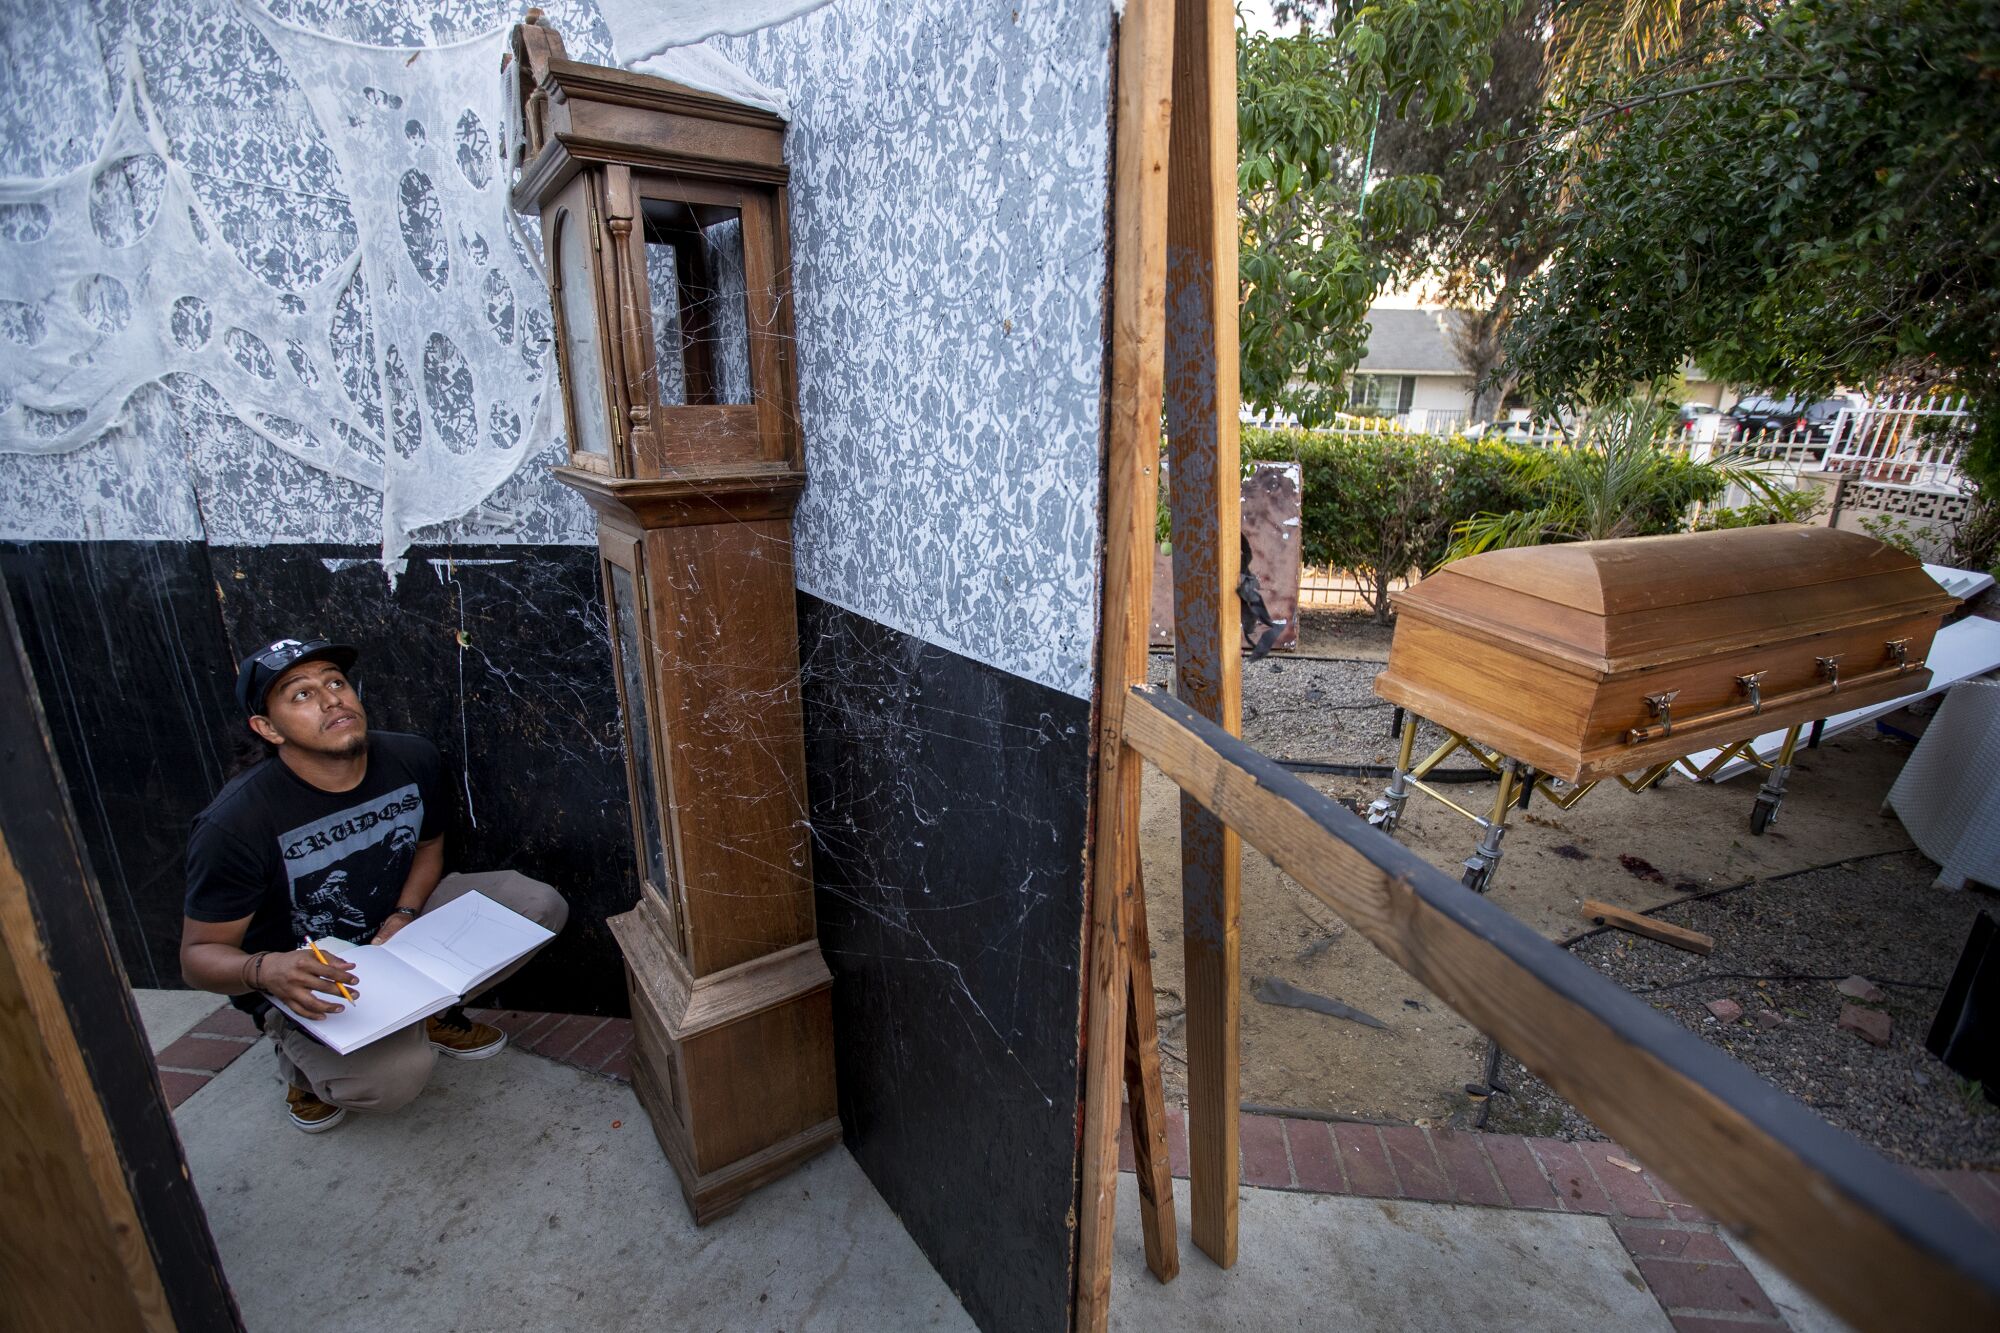 Eduardo Camarena, artiste et scénographe, dessine les plans scéniques de Santa Ana Haunt.